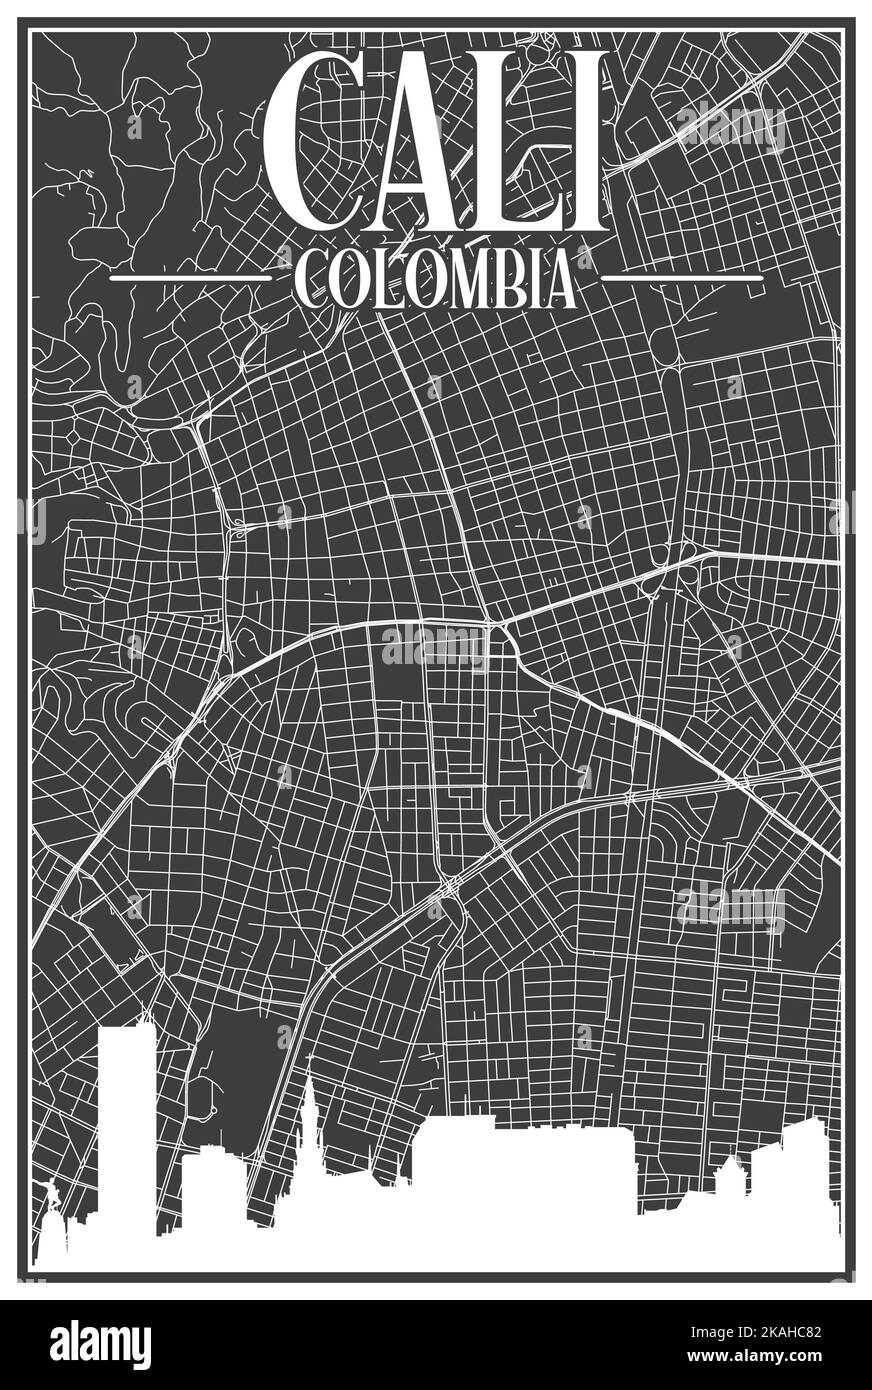 Carte du réseau des rues du centre-ville DE CALI, COLOMBIE, imprimée à la main, d'époque noire, avec des gratte-ciel et des lettres en surbrillance Illustration de Vecteur